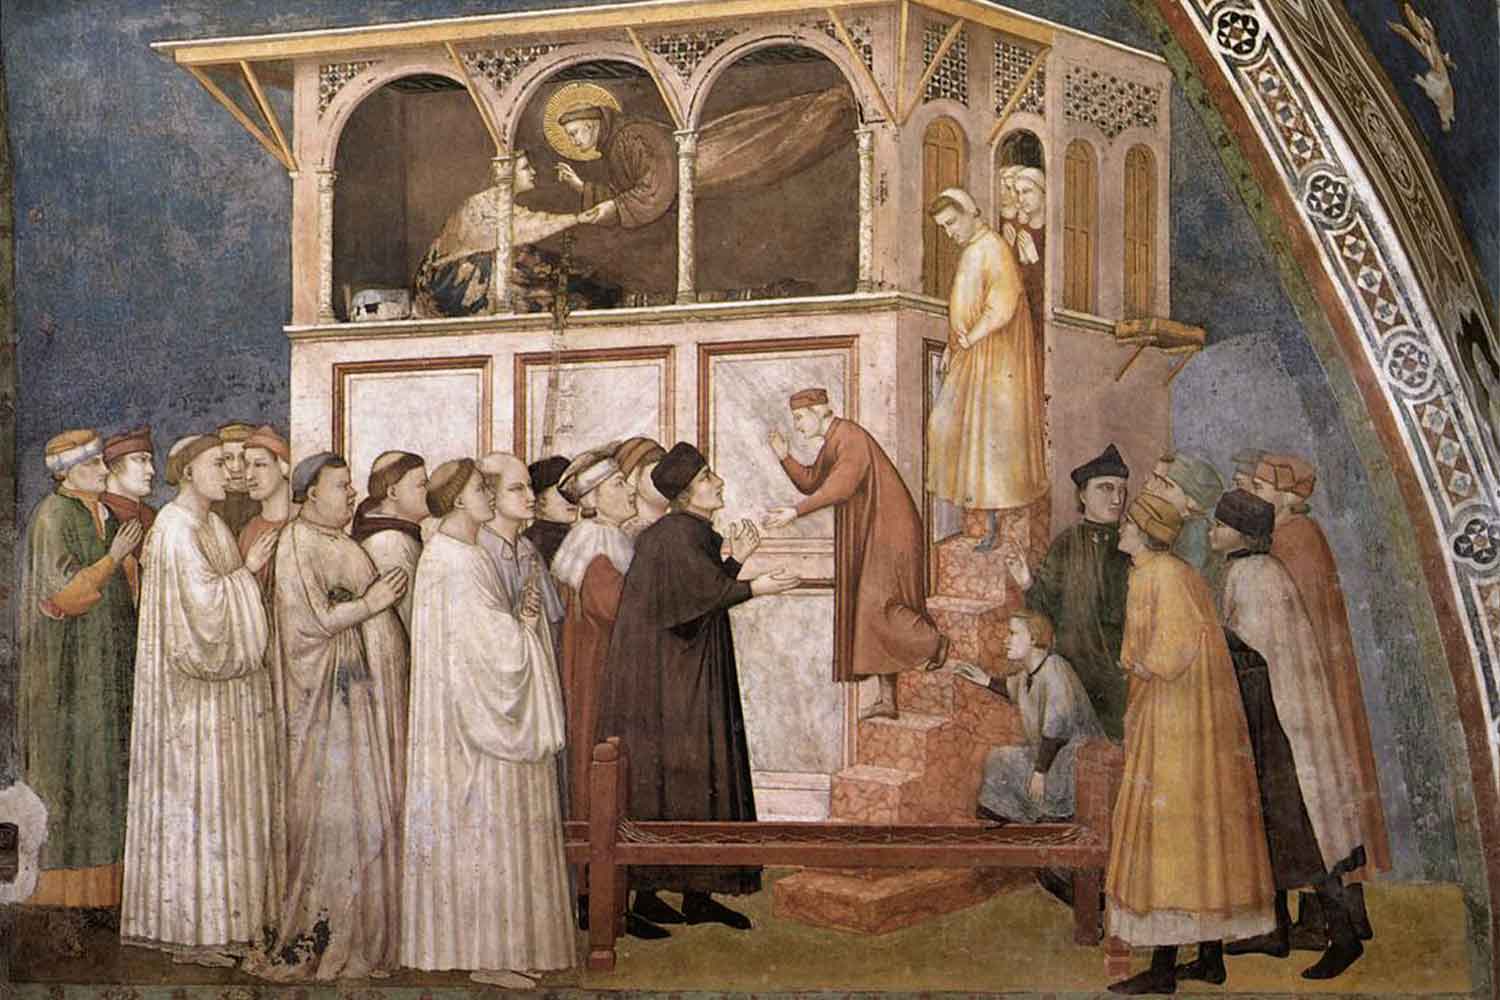 Giotto, Resurrezione del fanciullo di Suessa (1308 – 1311) - Basilica inferiore, Assisi